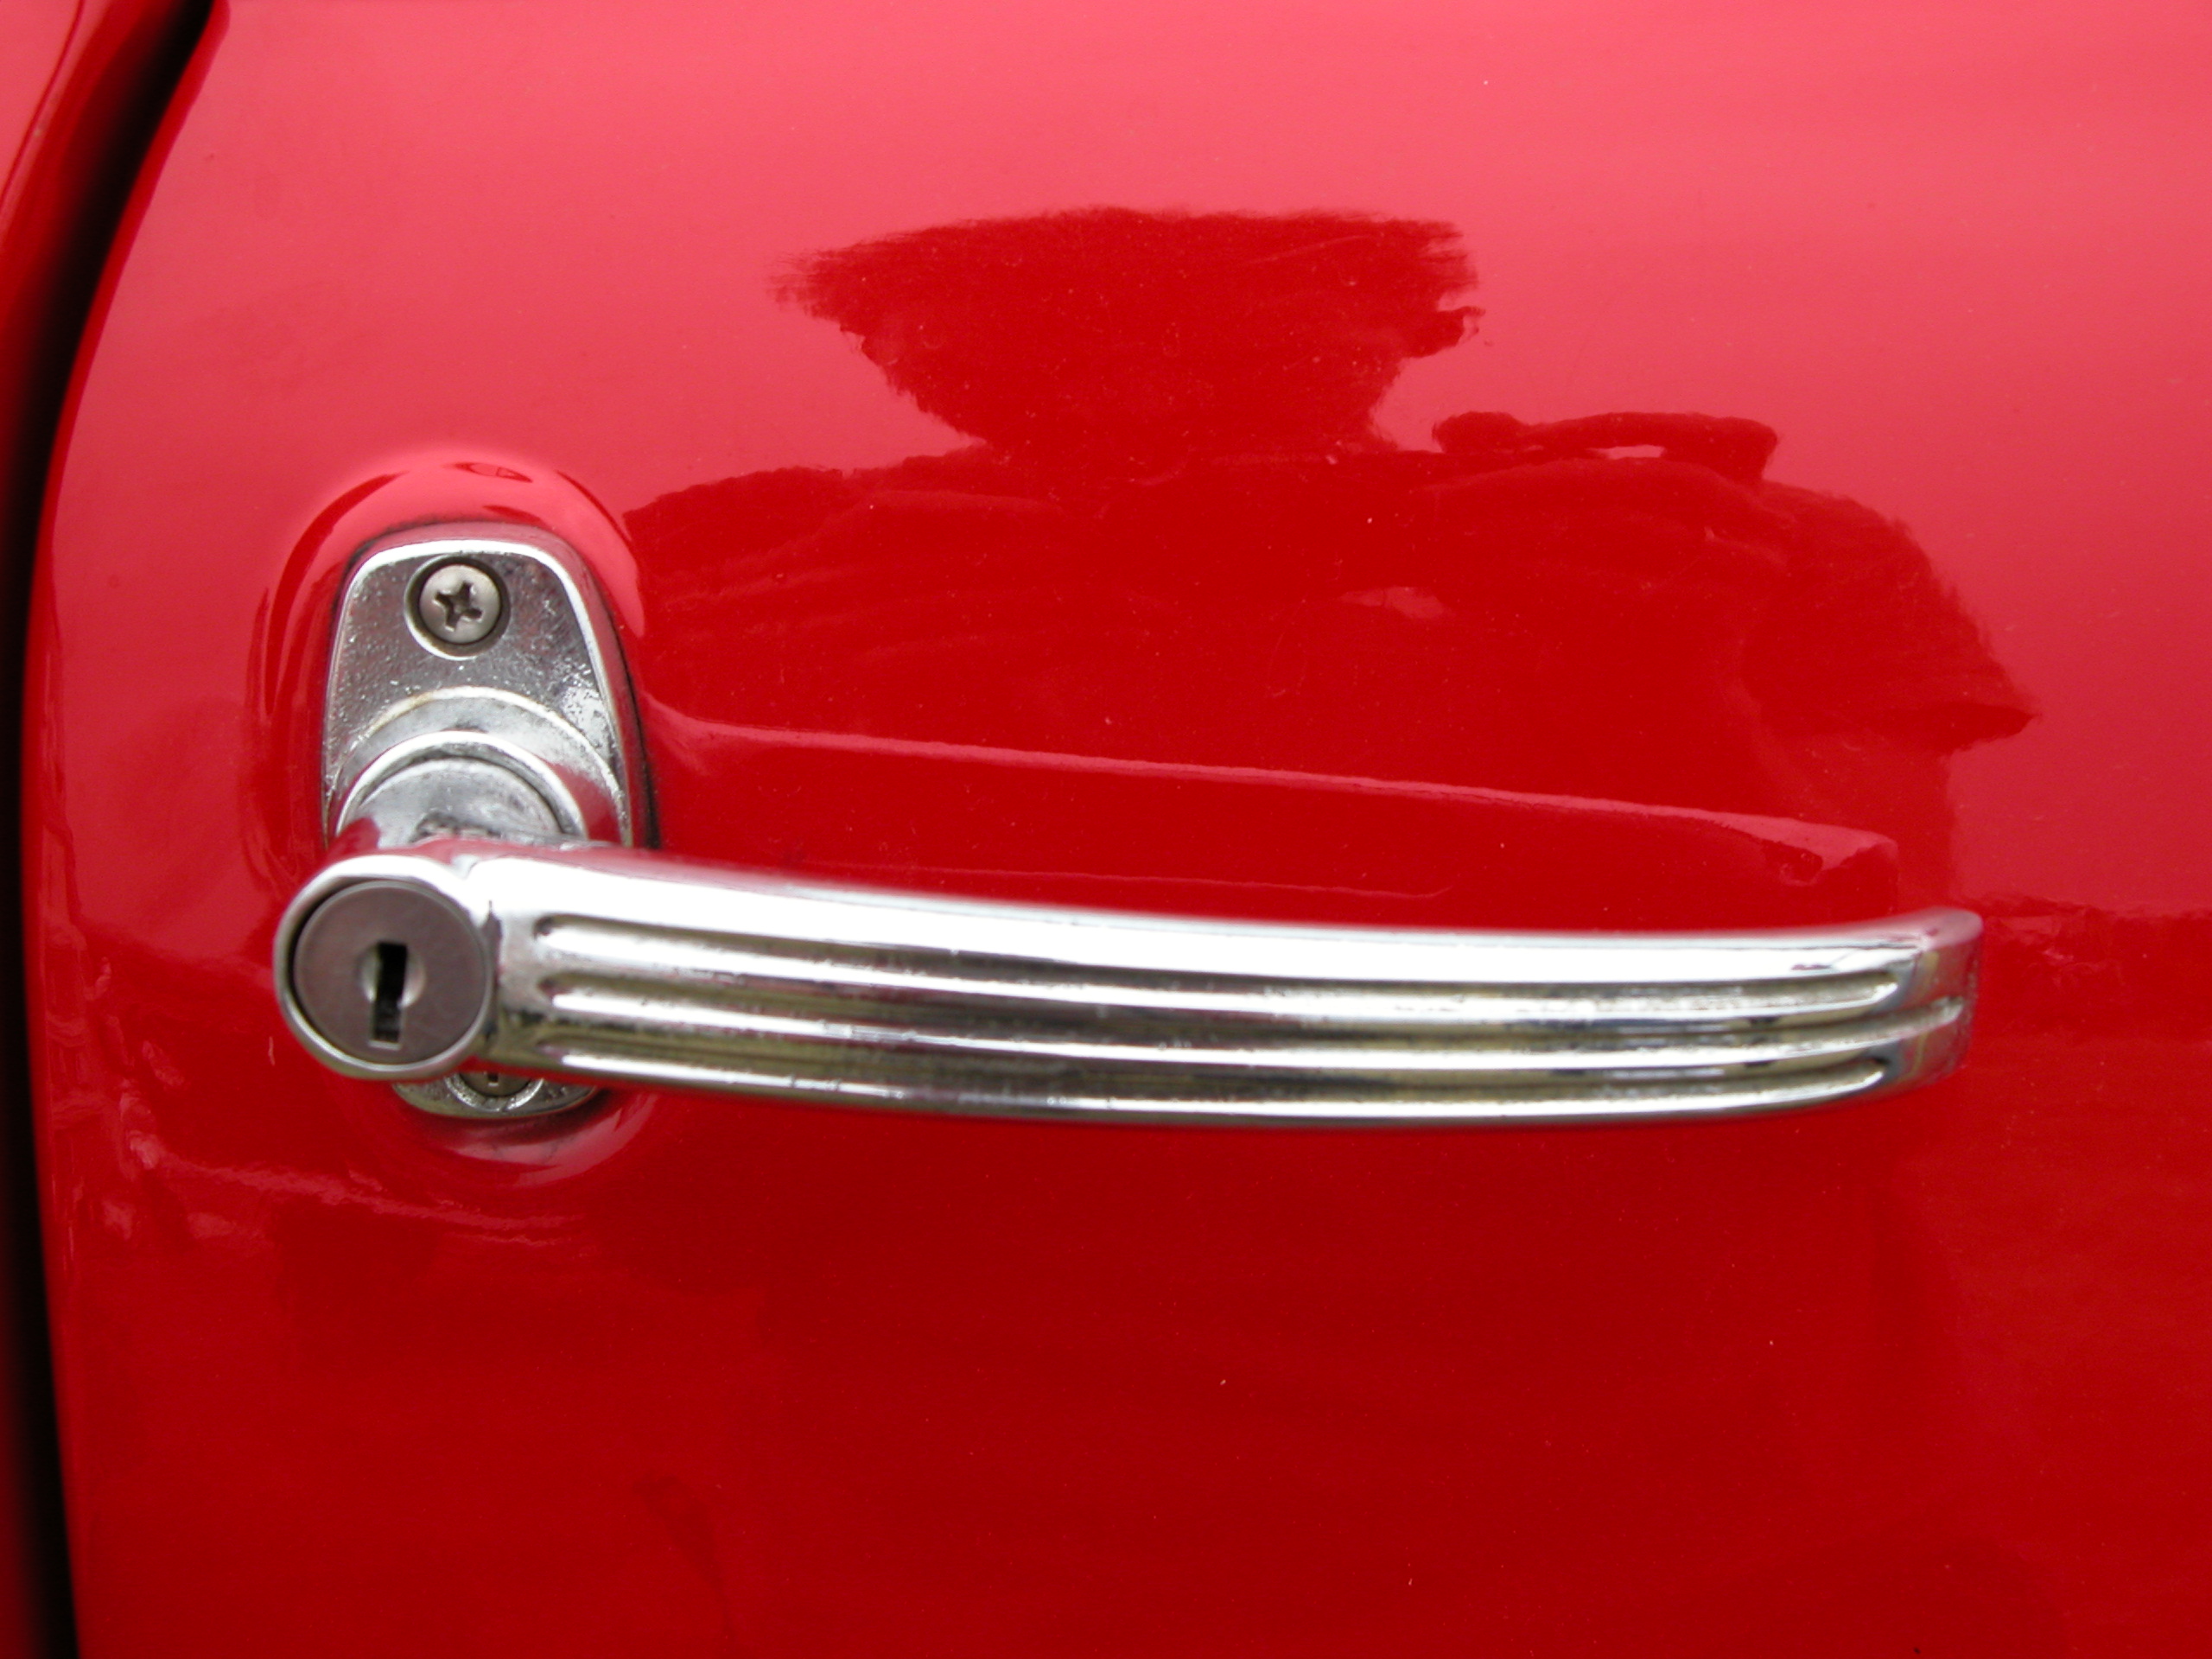 metals ornaments doorhandle handle handles red metal chrome